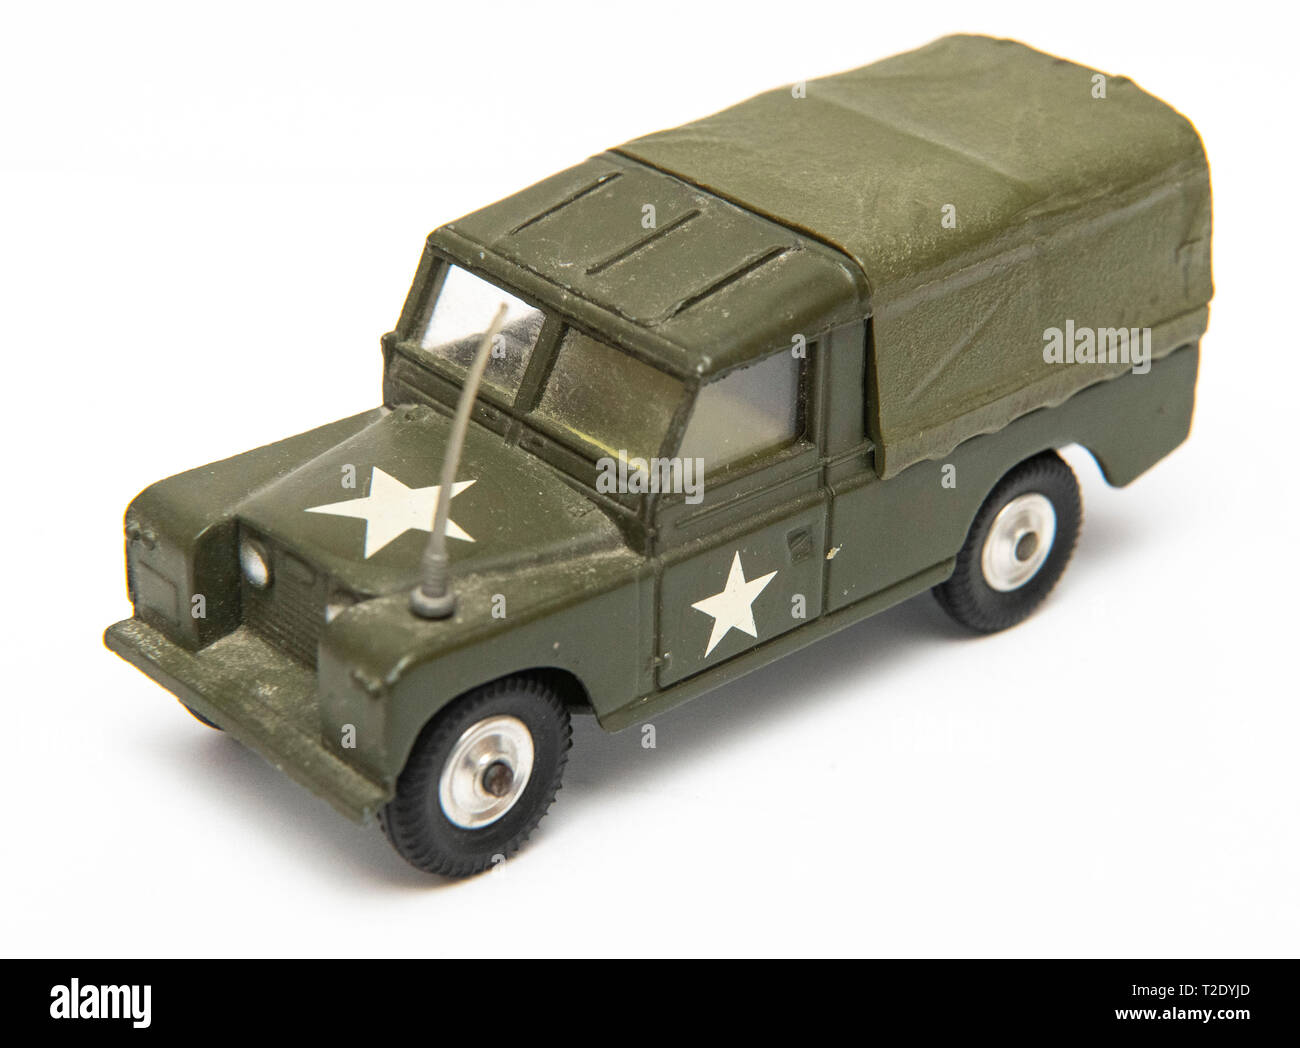 1/43 scale vintage Corgi Toys modèle no 357 Land Rover 109 WB US Army calibre transporteur sur un fond blanc Banque D'Images